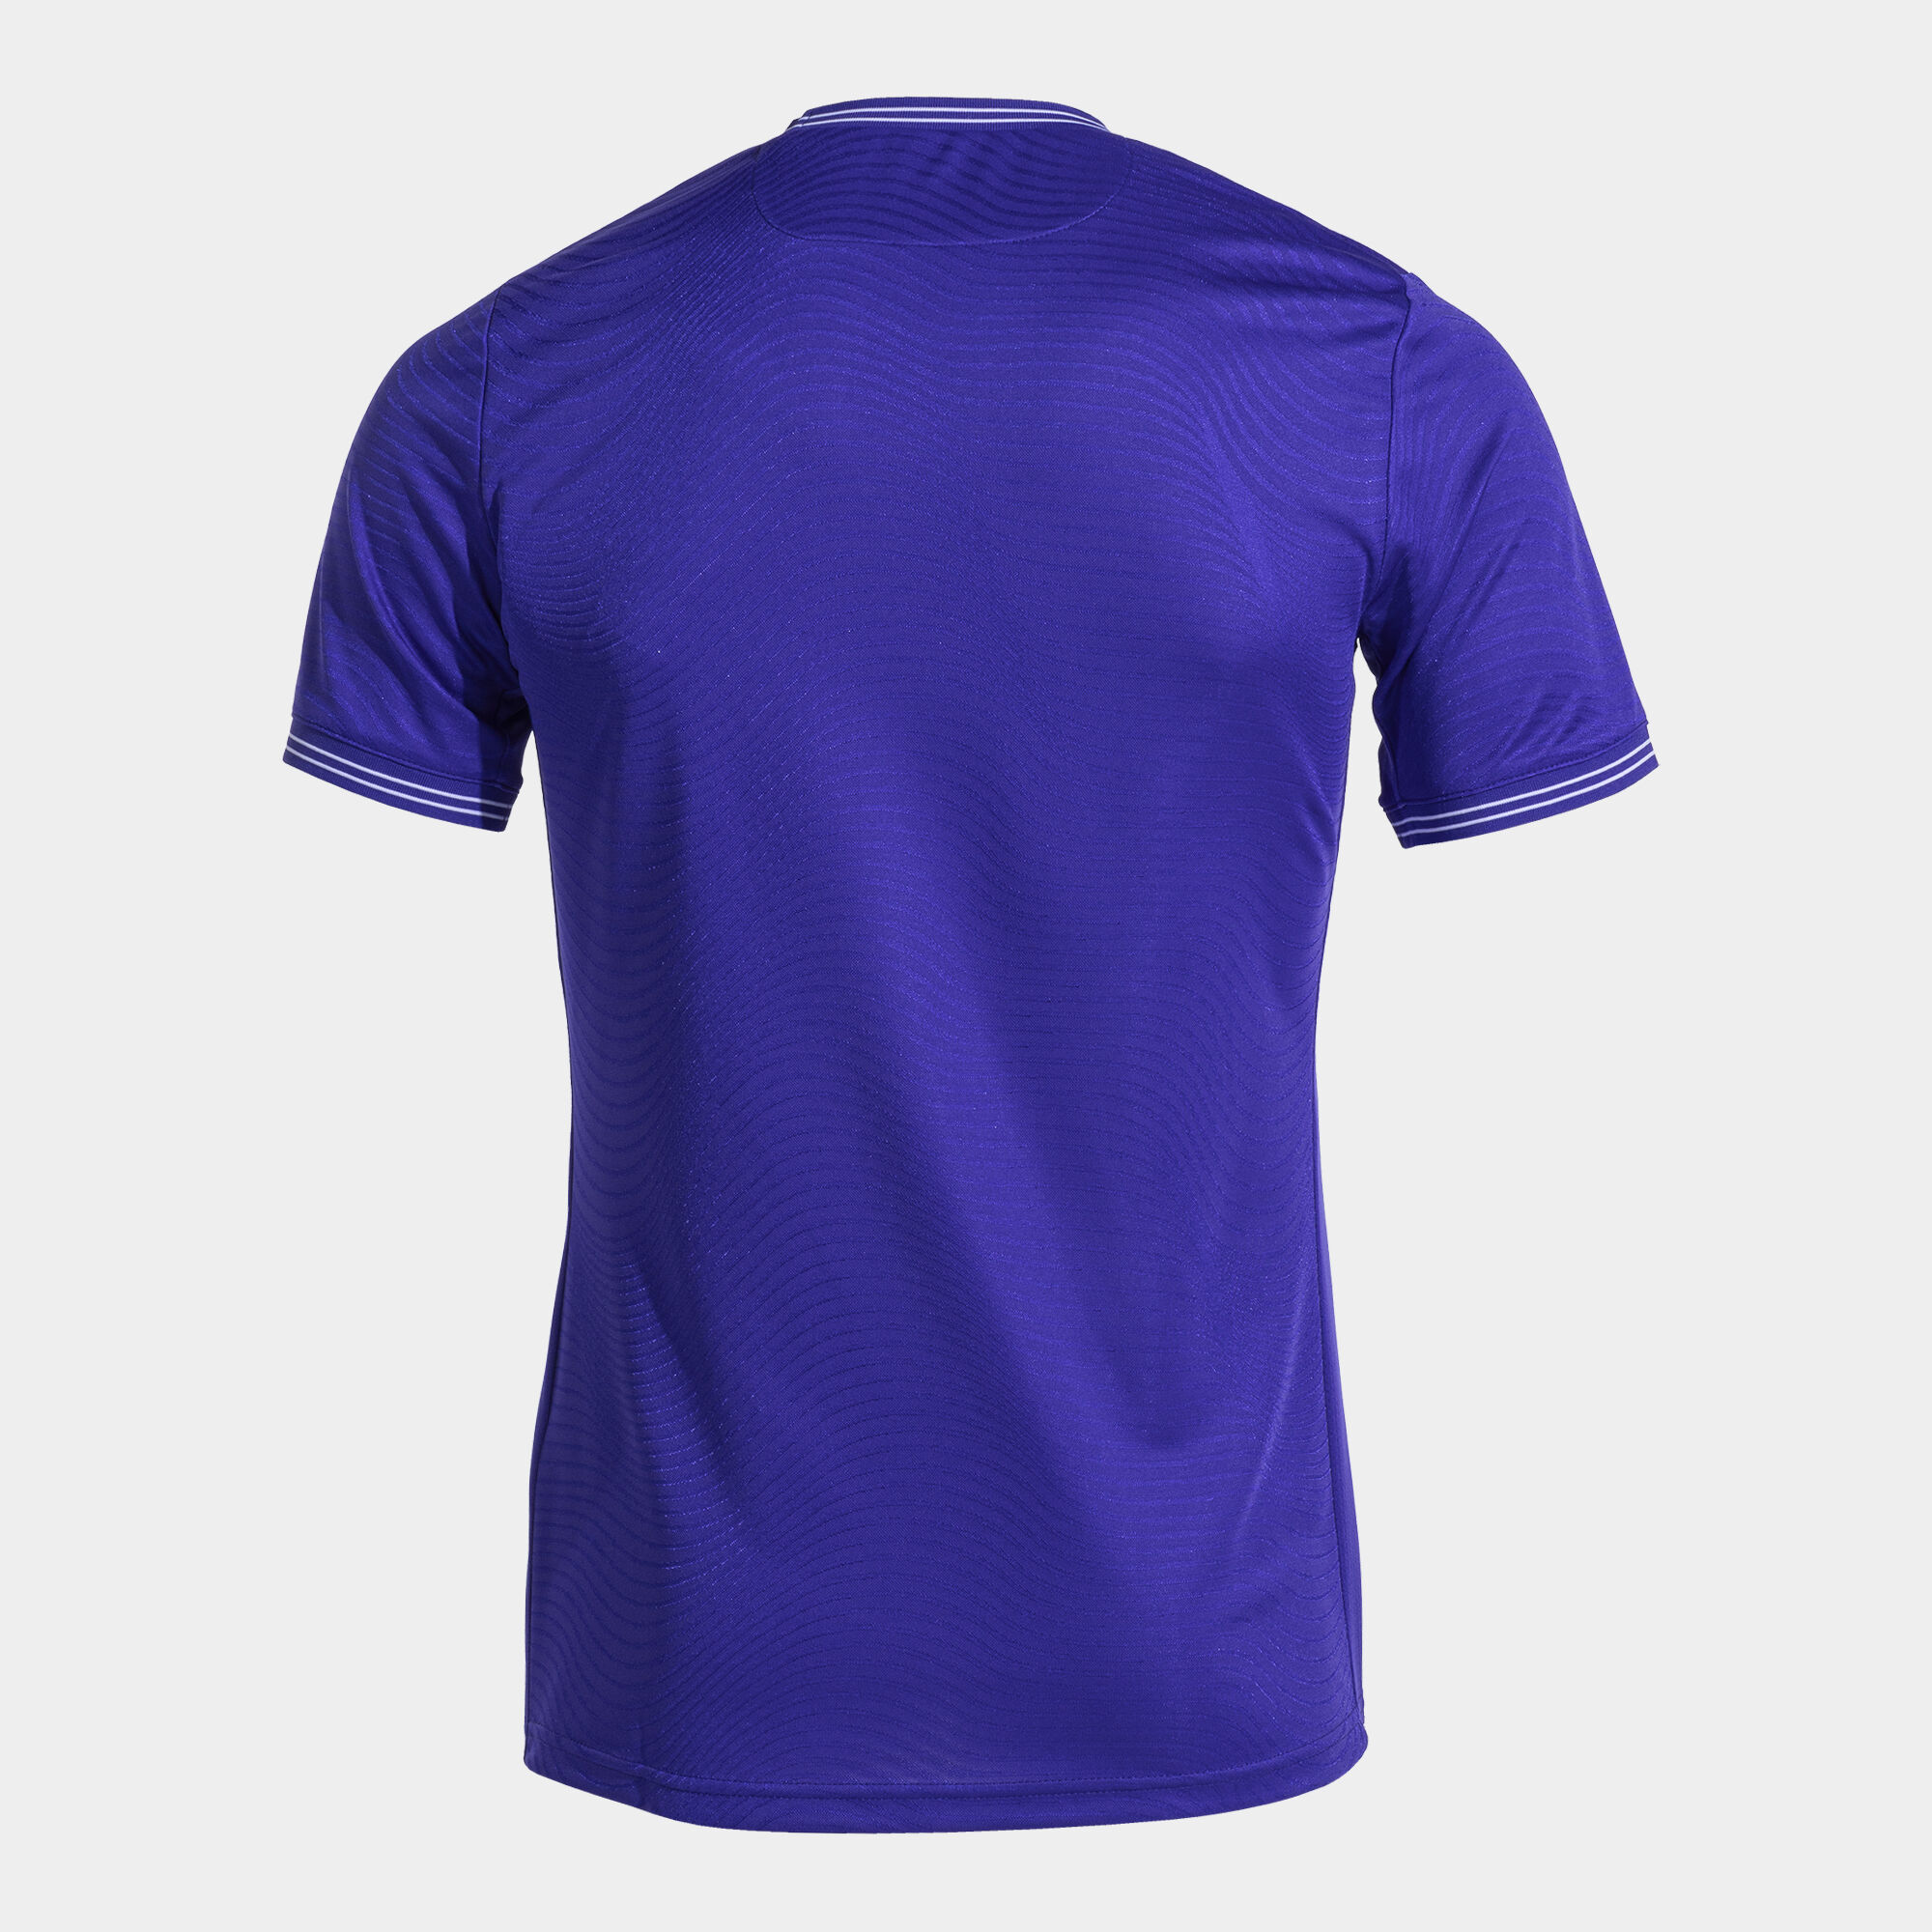 Shirt short sleeve man Toletum V violet